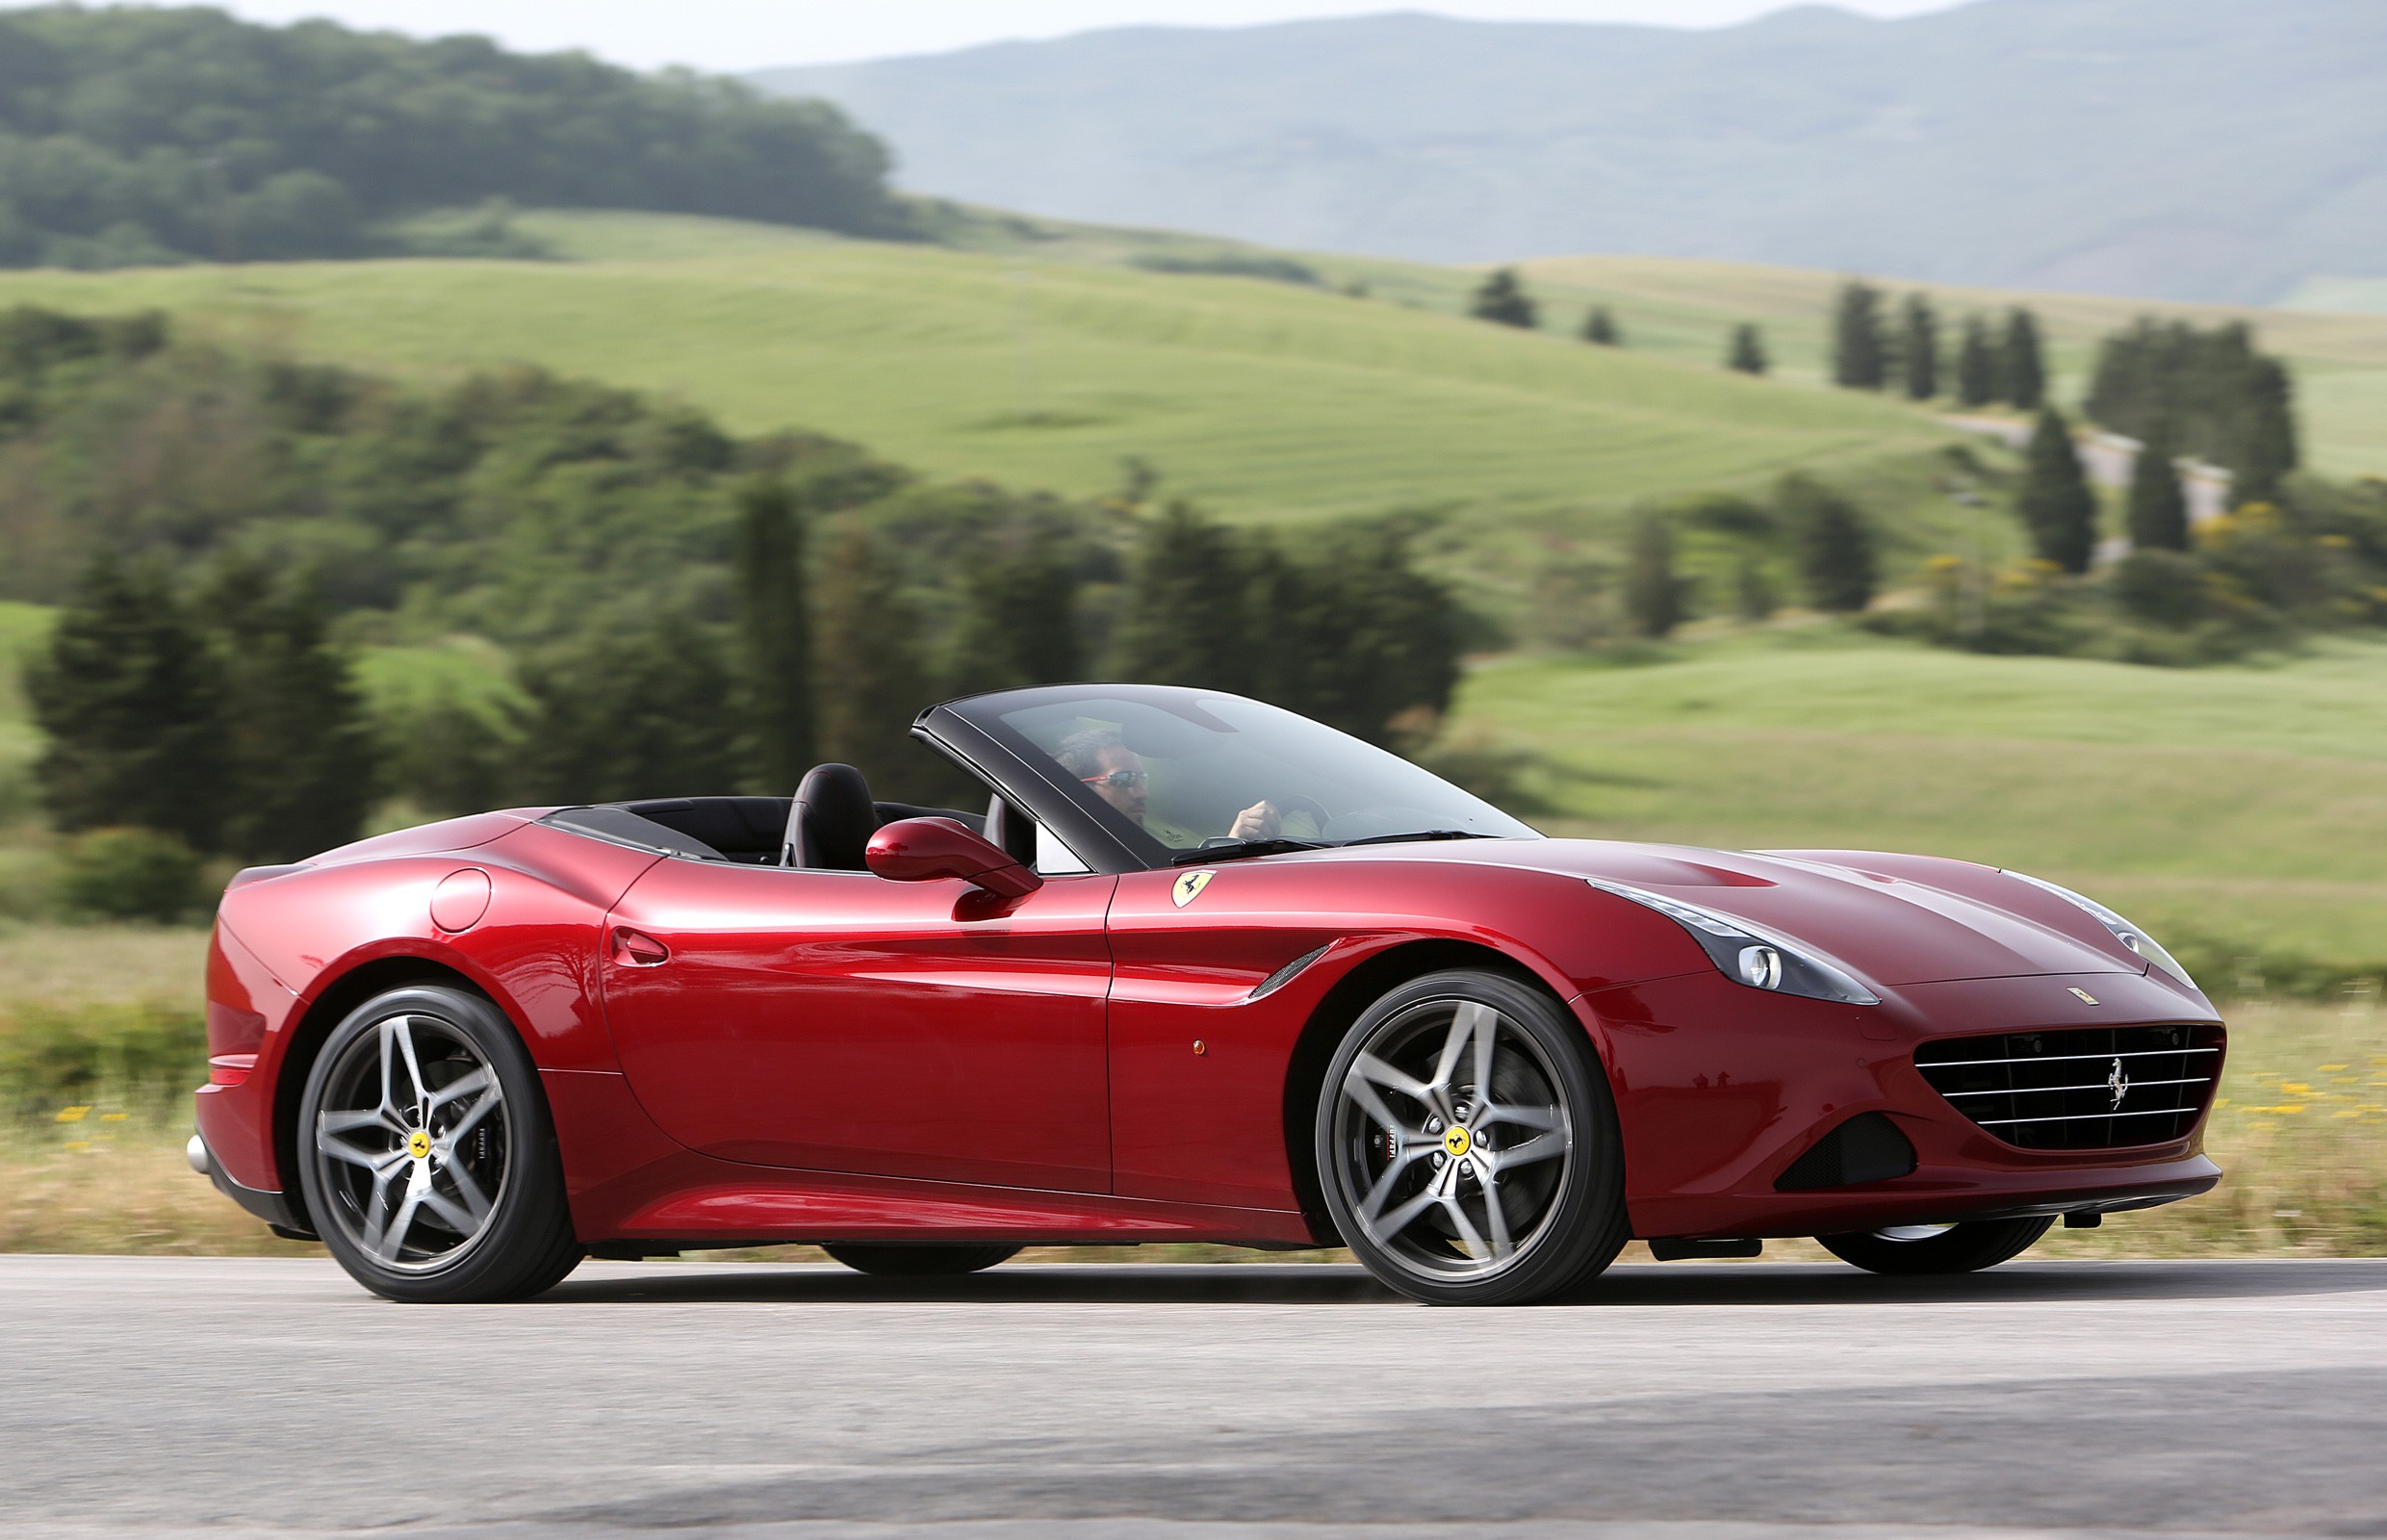 185 unidades de Ferrari California T, llamadas a revisión